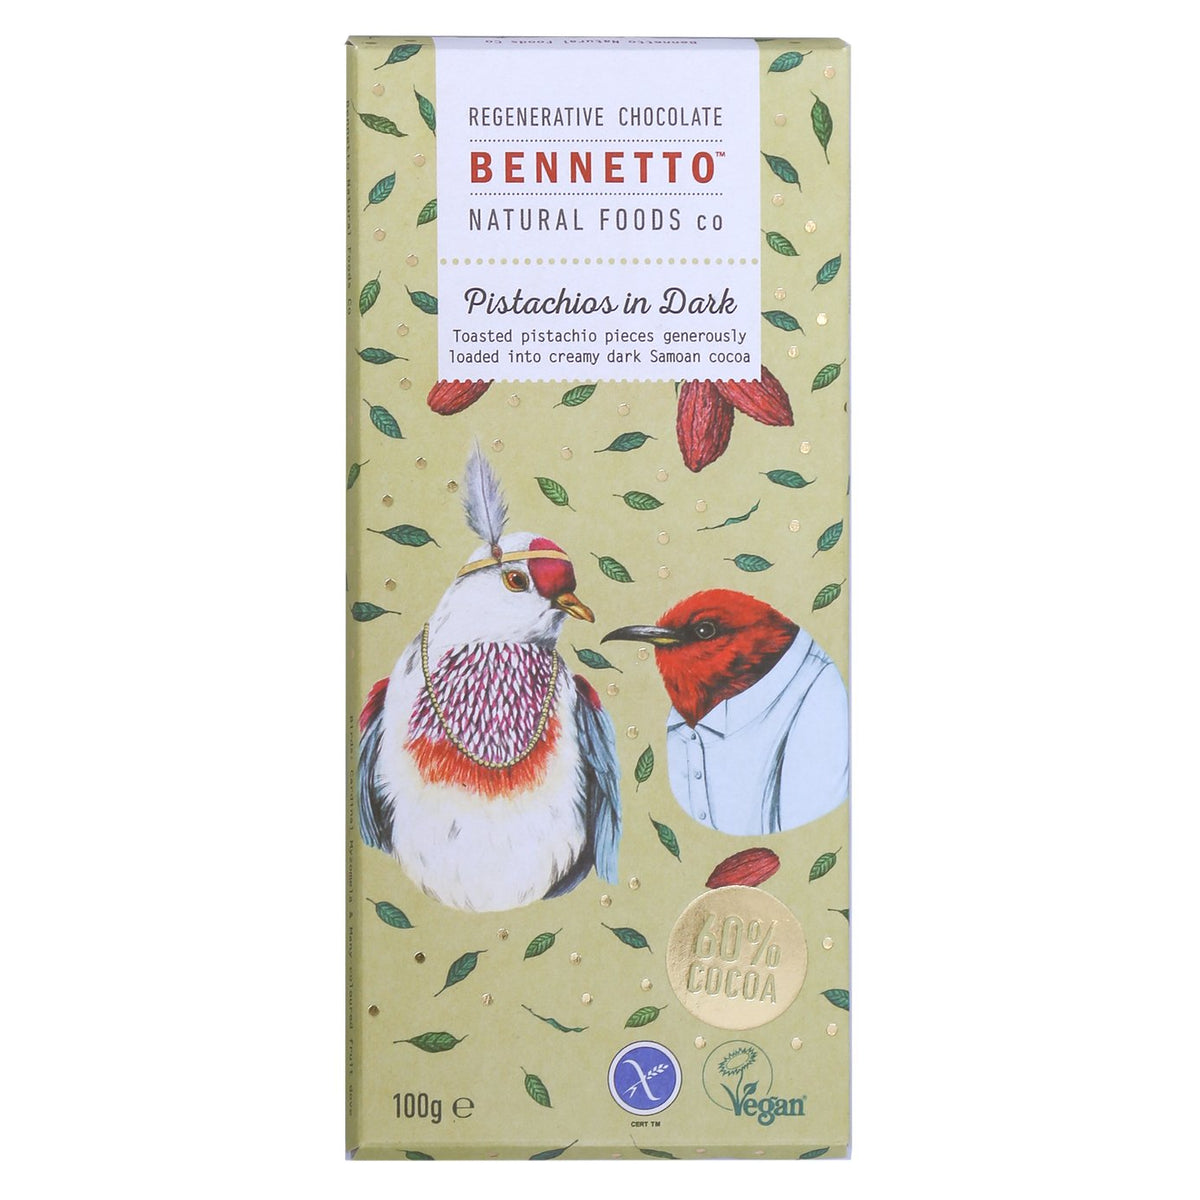 BennettosBennetto Organic Dark Chocolate Pistachios In Dark 100g #same day gift delivery melbourne#